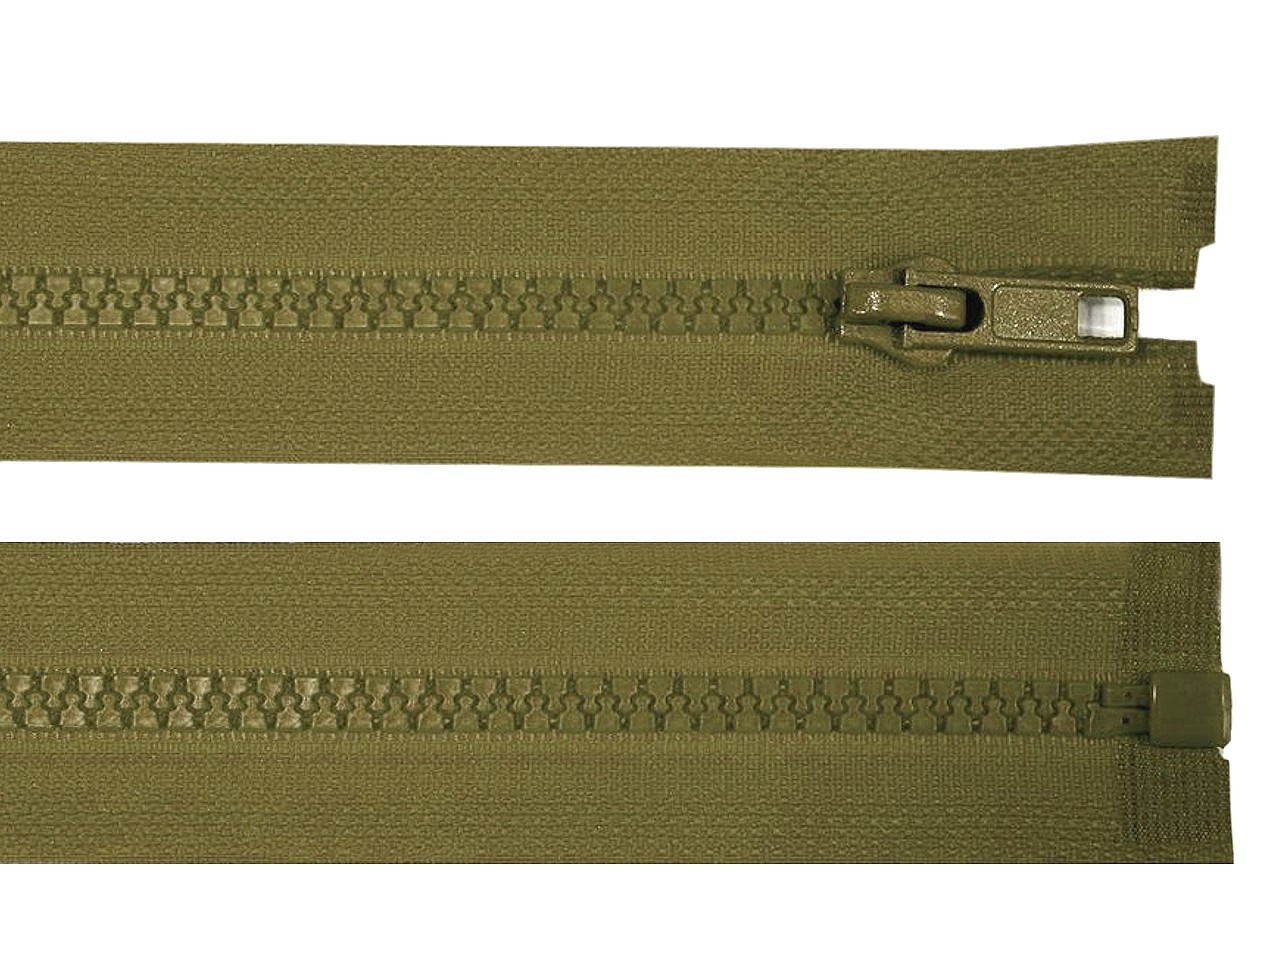 Kostěný zip šíře 5 mm délka 55 cm bundový, barva 298 zelená khaki tmavá